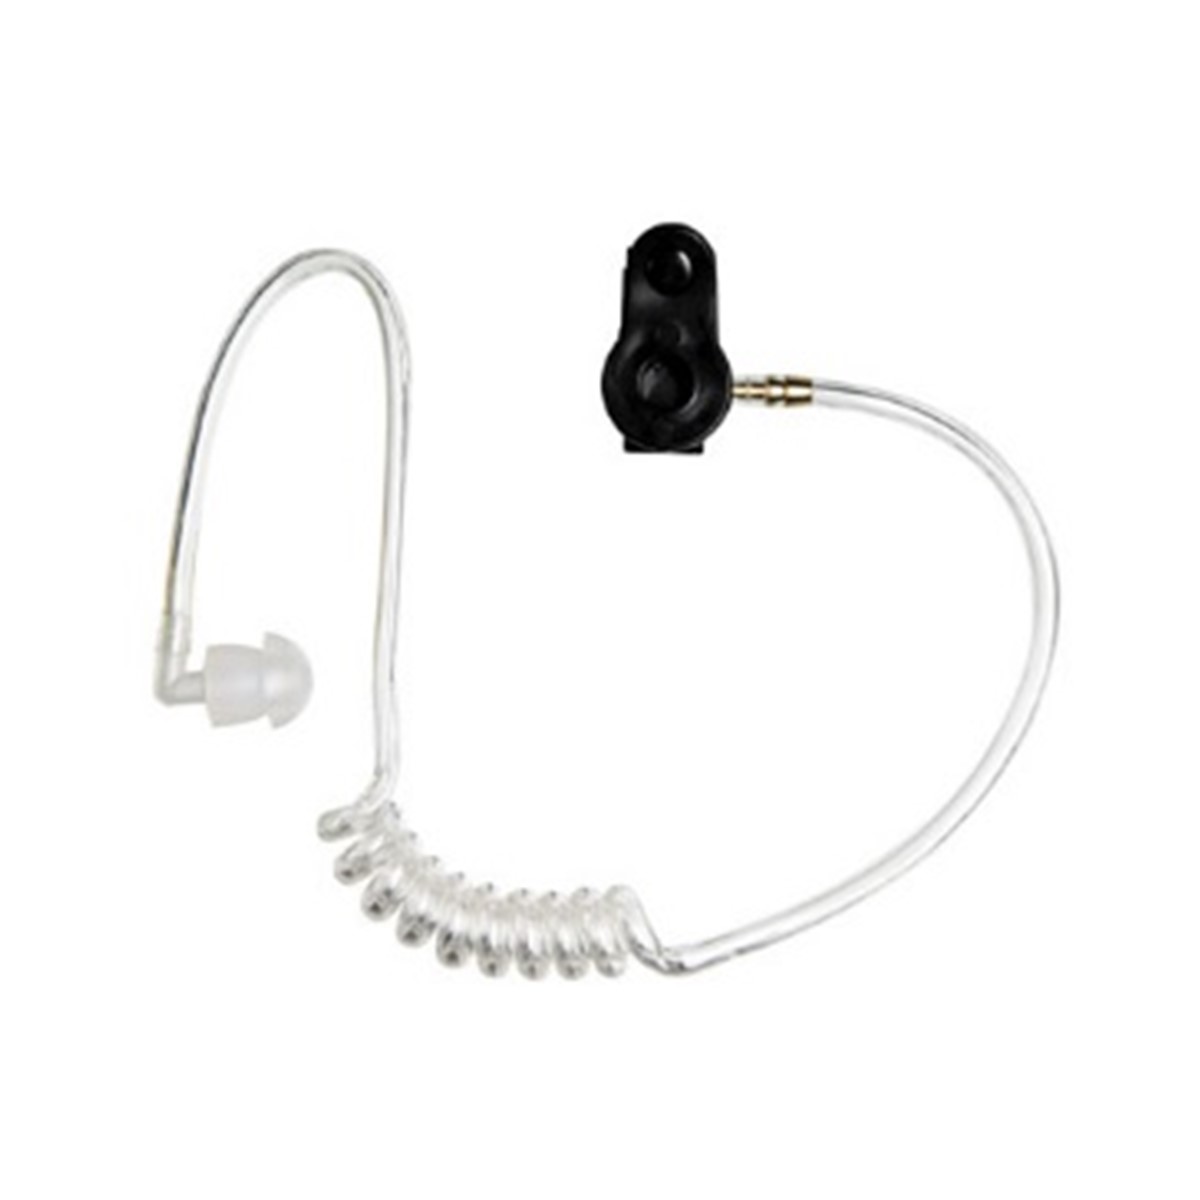 Kit de audio en espiral transparente para manos libre Motorola PMLN4605A